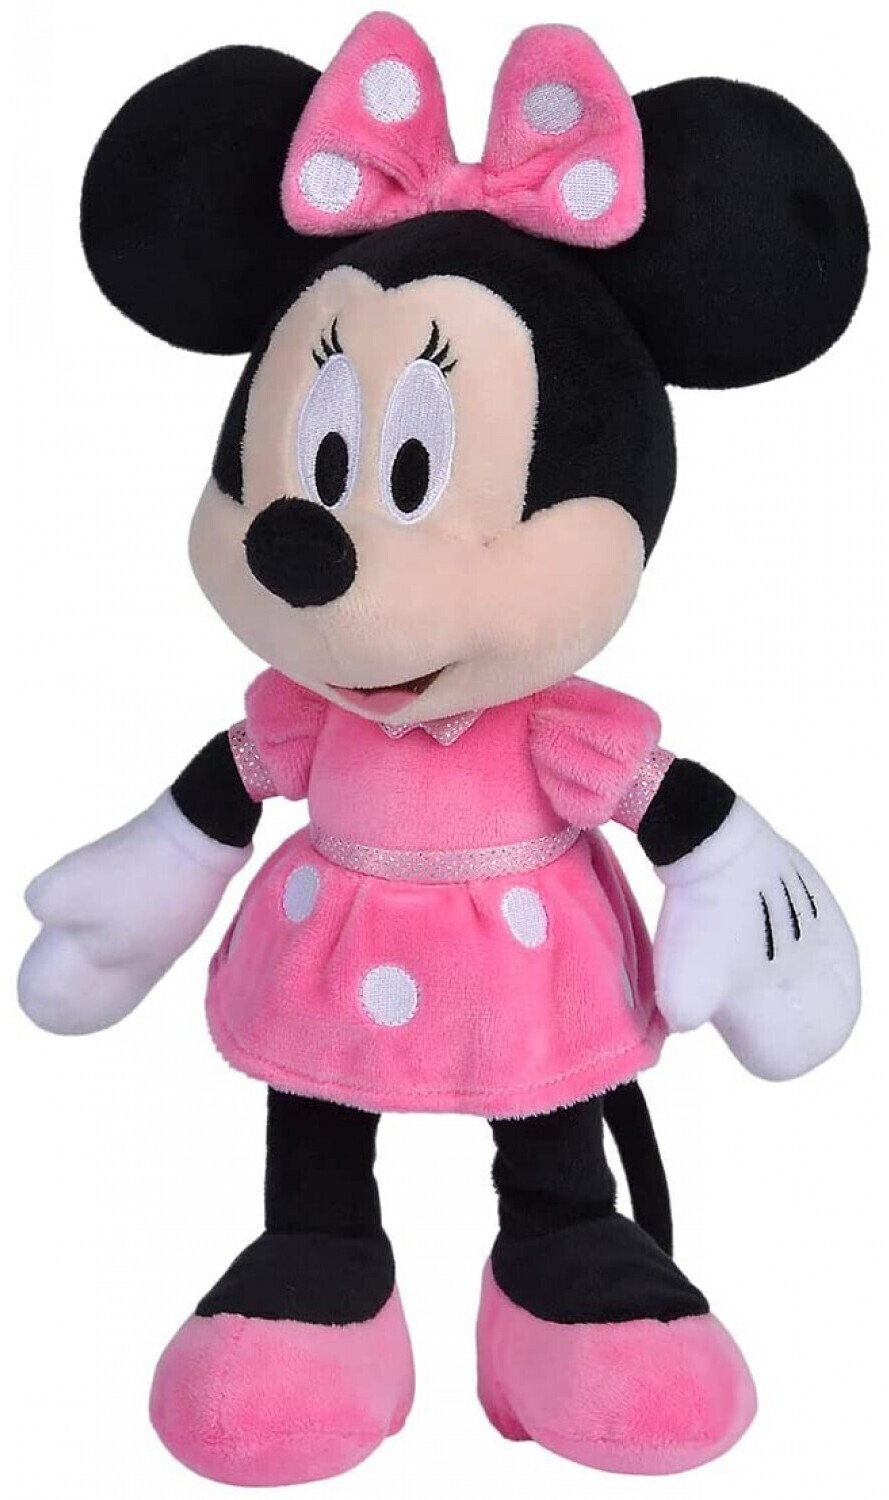 Jazwares Minnie Disney Squishmallows 40 cm Teddy